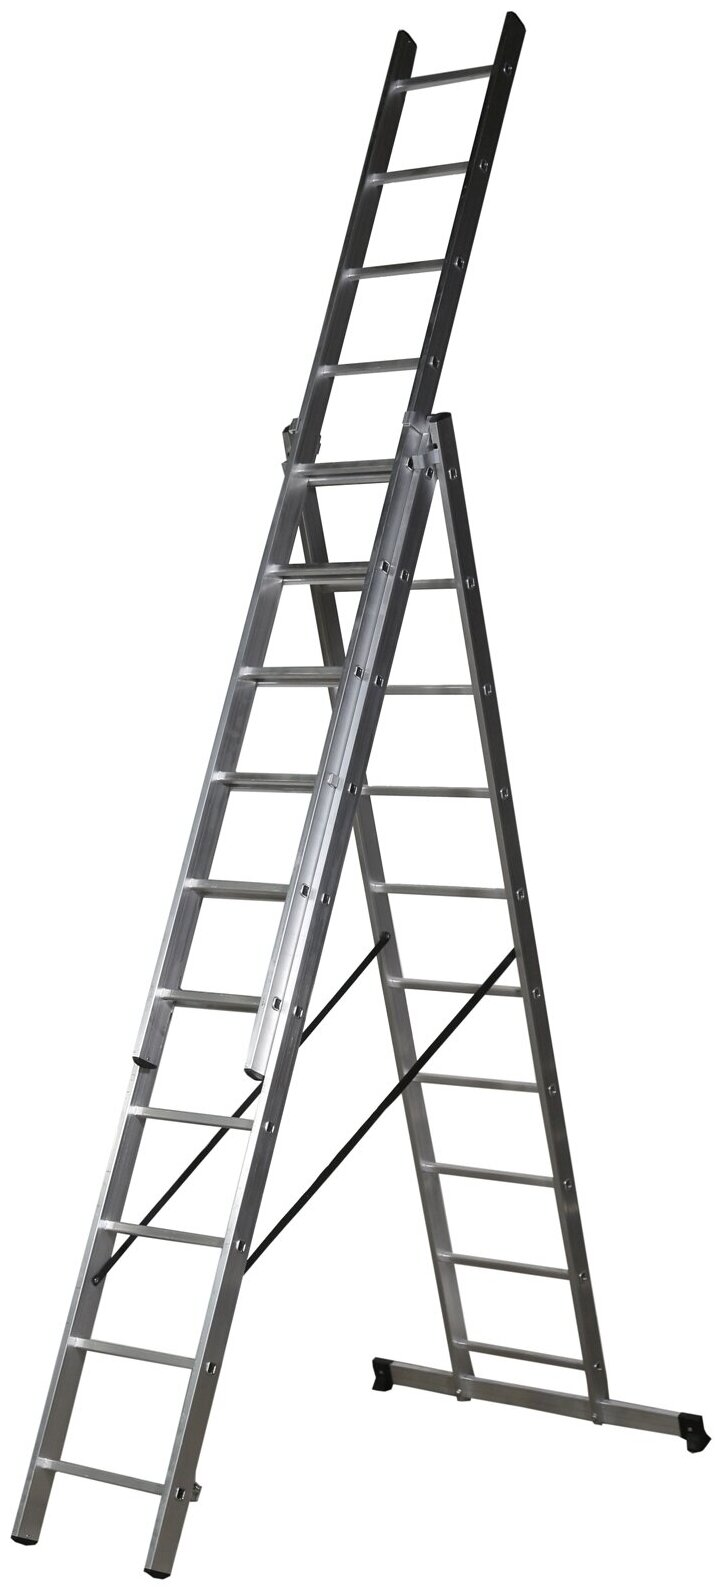 Лестница трехсекционная завод лестниц Professional высота 7,7м 3х10 ступеней